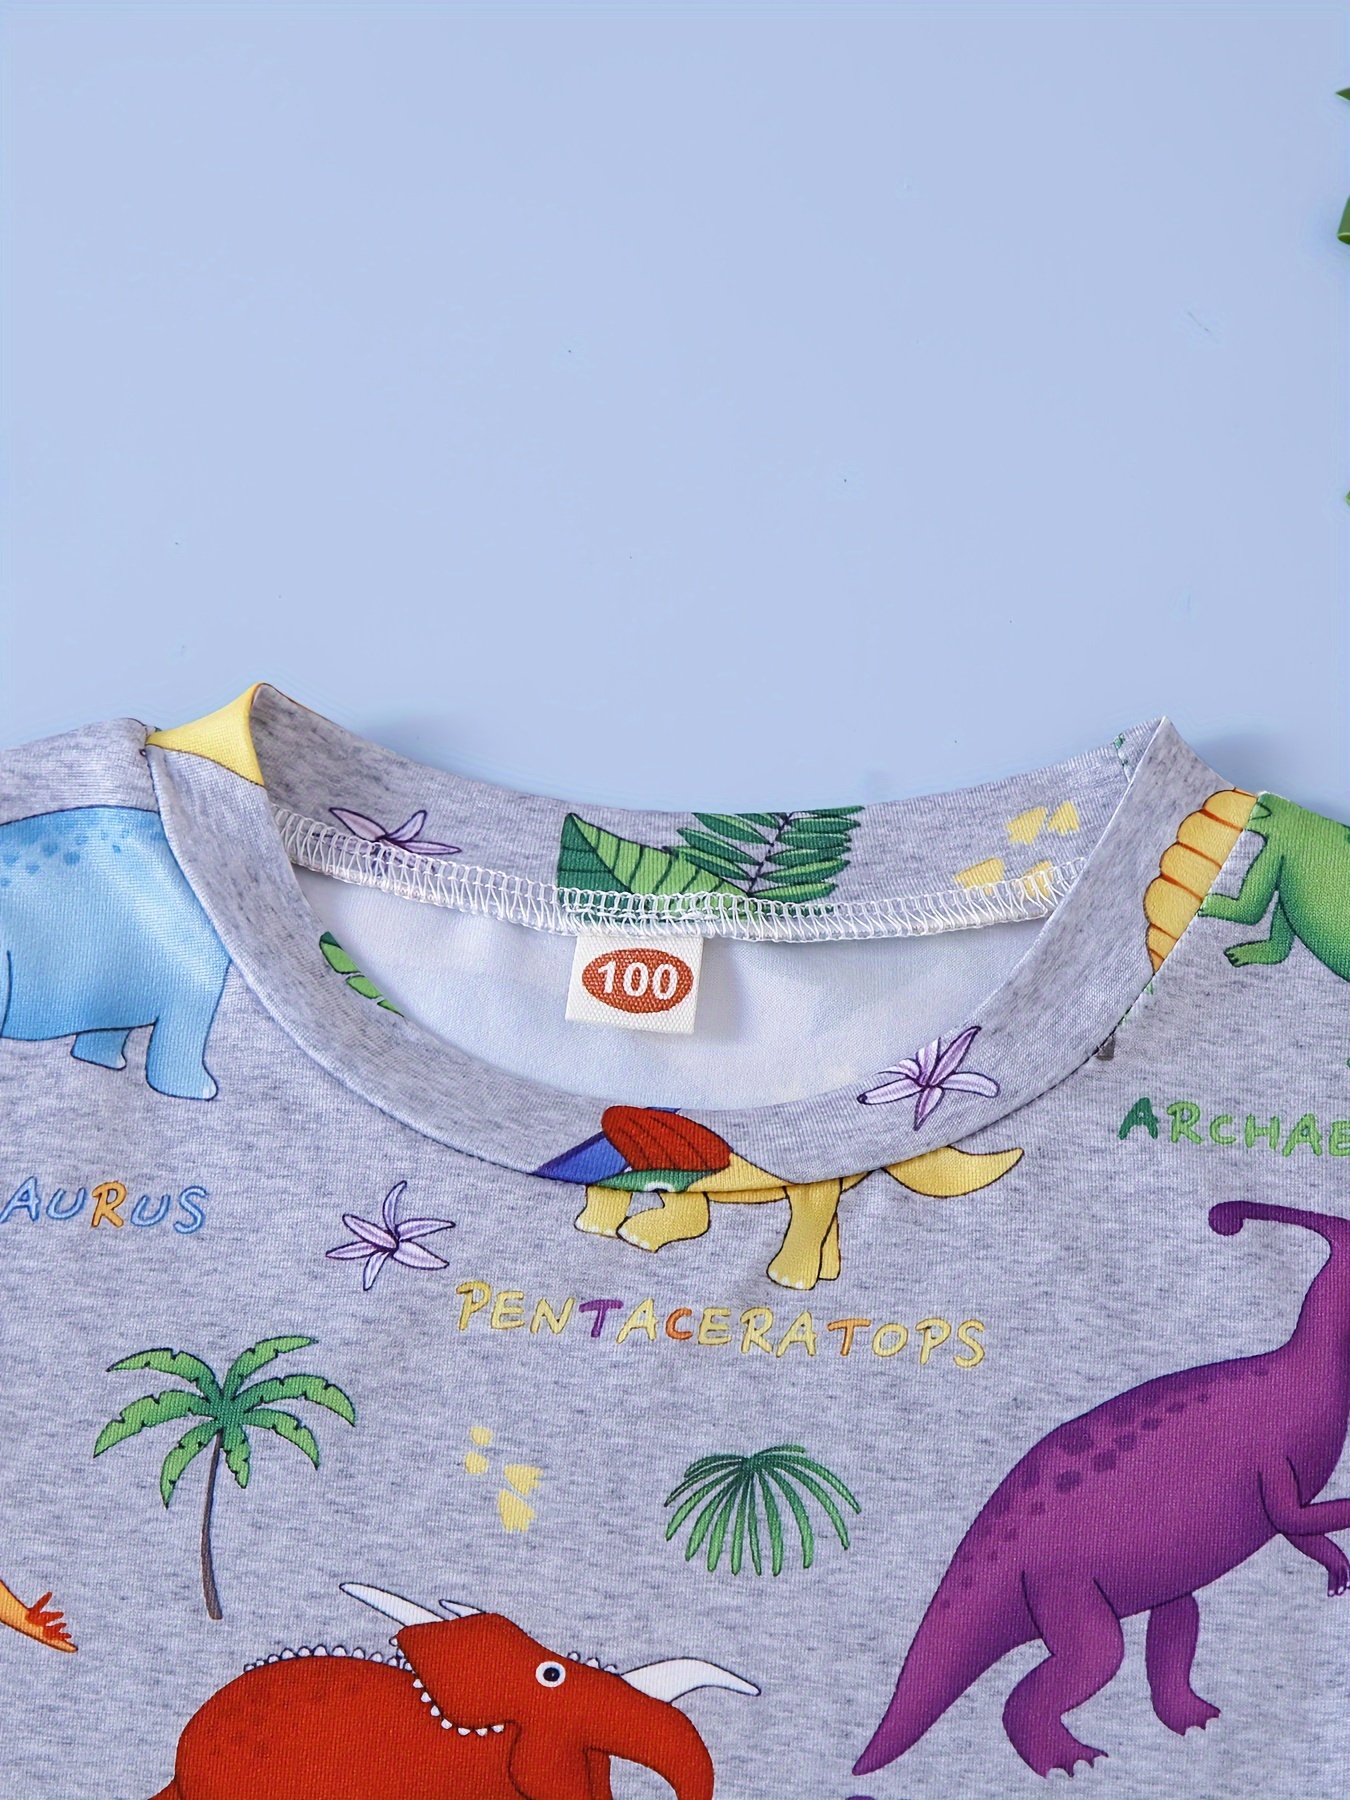 Kid Boy Animal Dinosaur print short-sleeve T-shirt